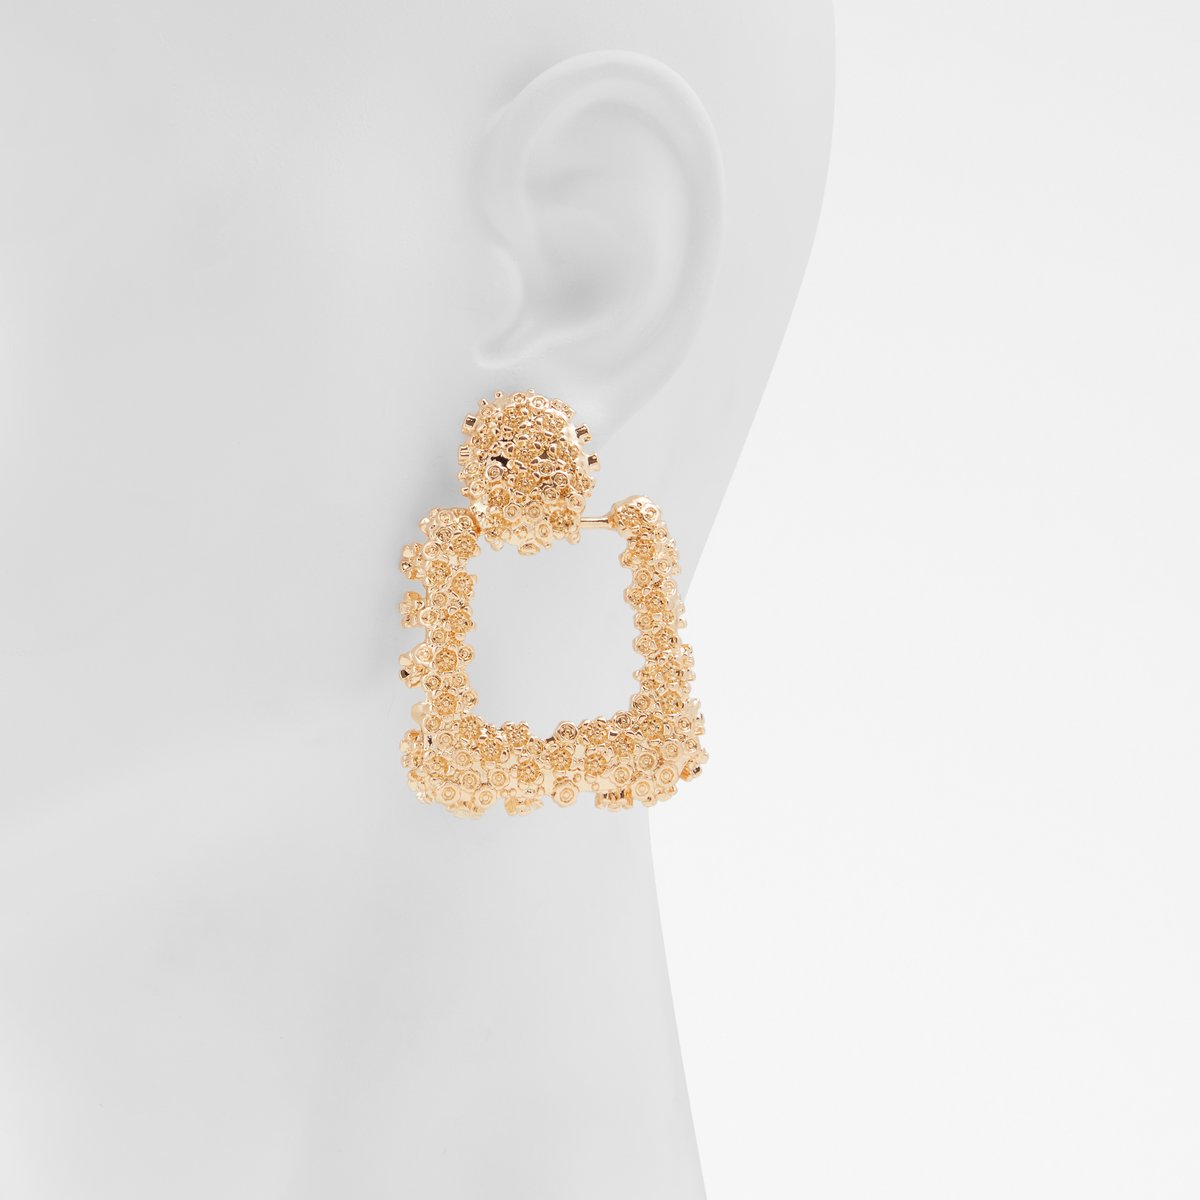 Preabaen Gold Women's Earrings | ALDO Canada